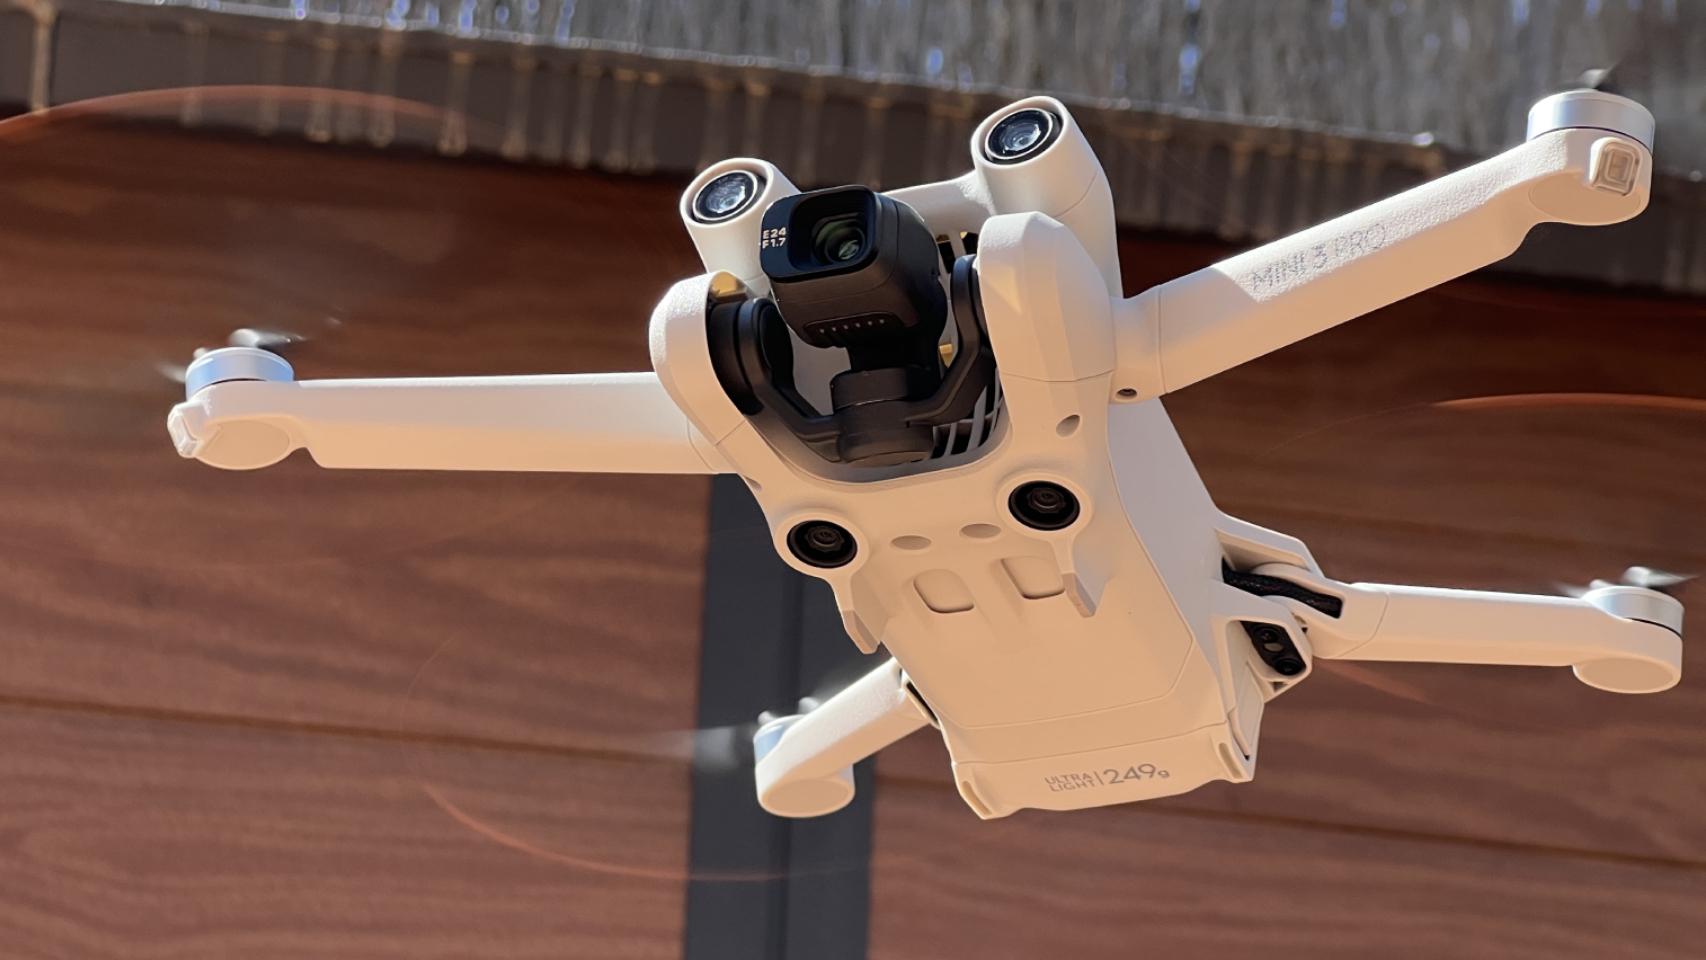 DJI lanza un dron profesional muy potente que cabe en una mochila, Pymes